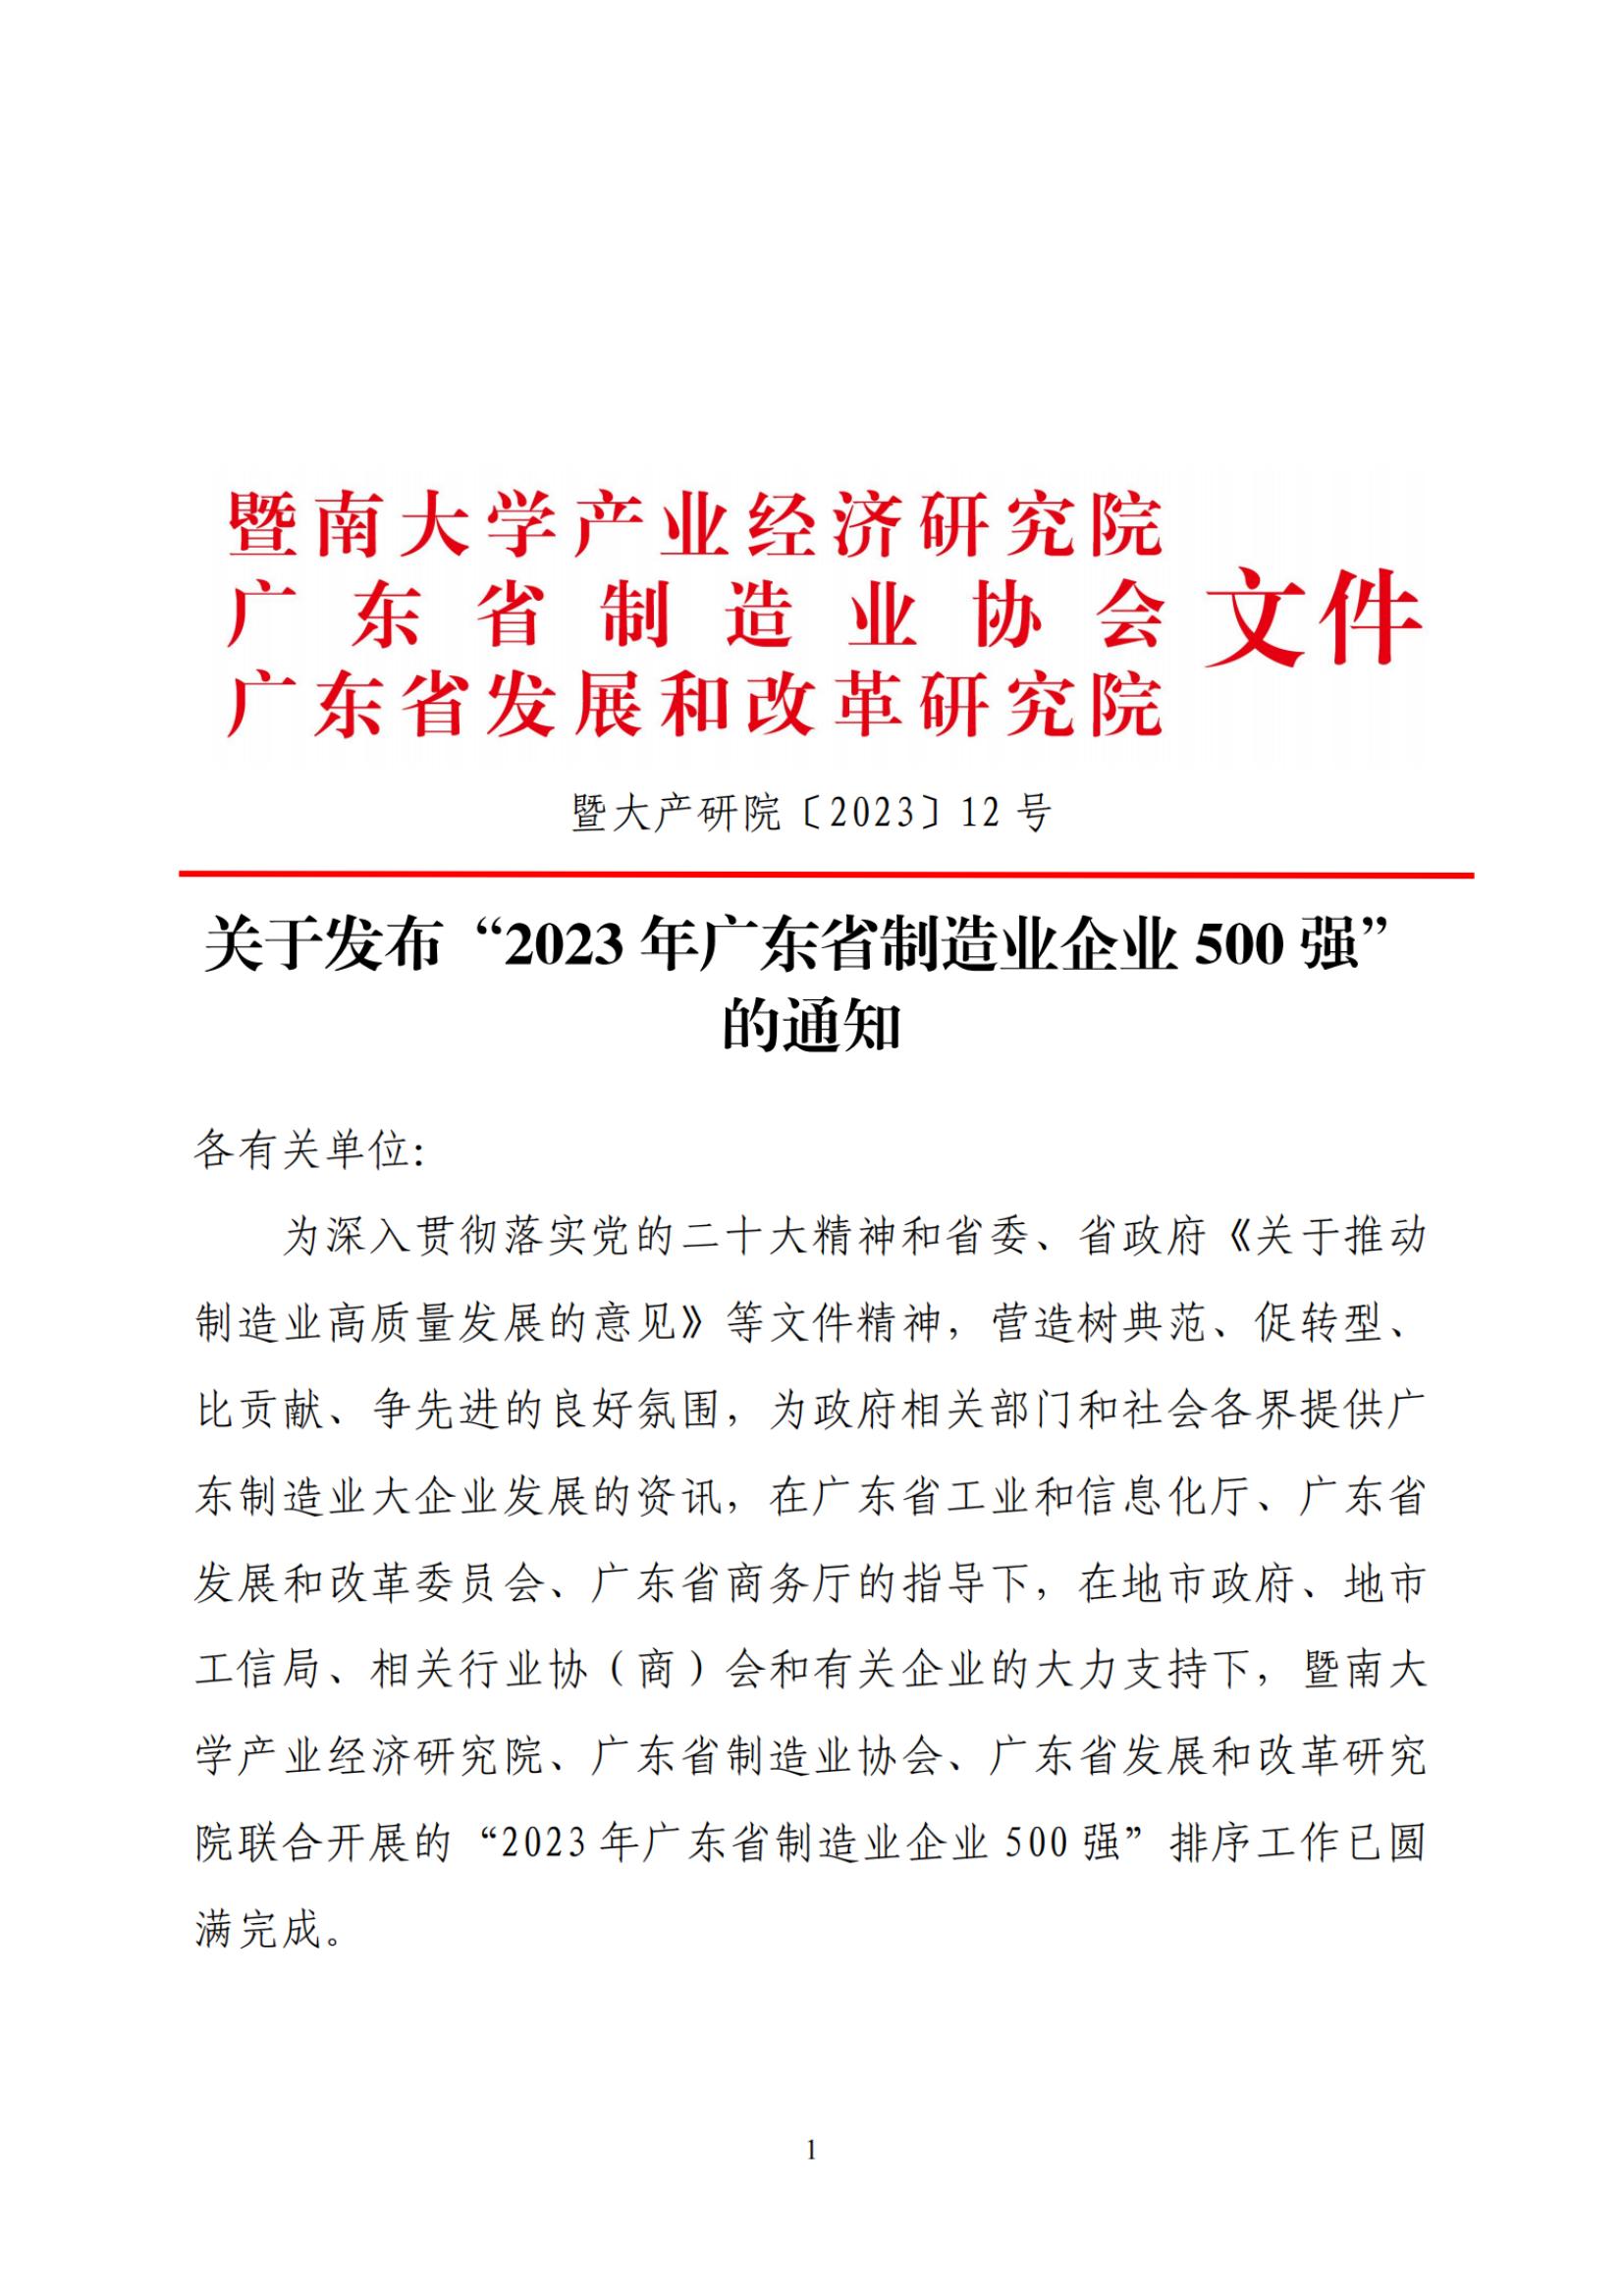 关于发布“2023年广东省制造业企业500强”的通知